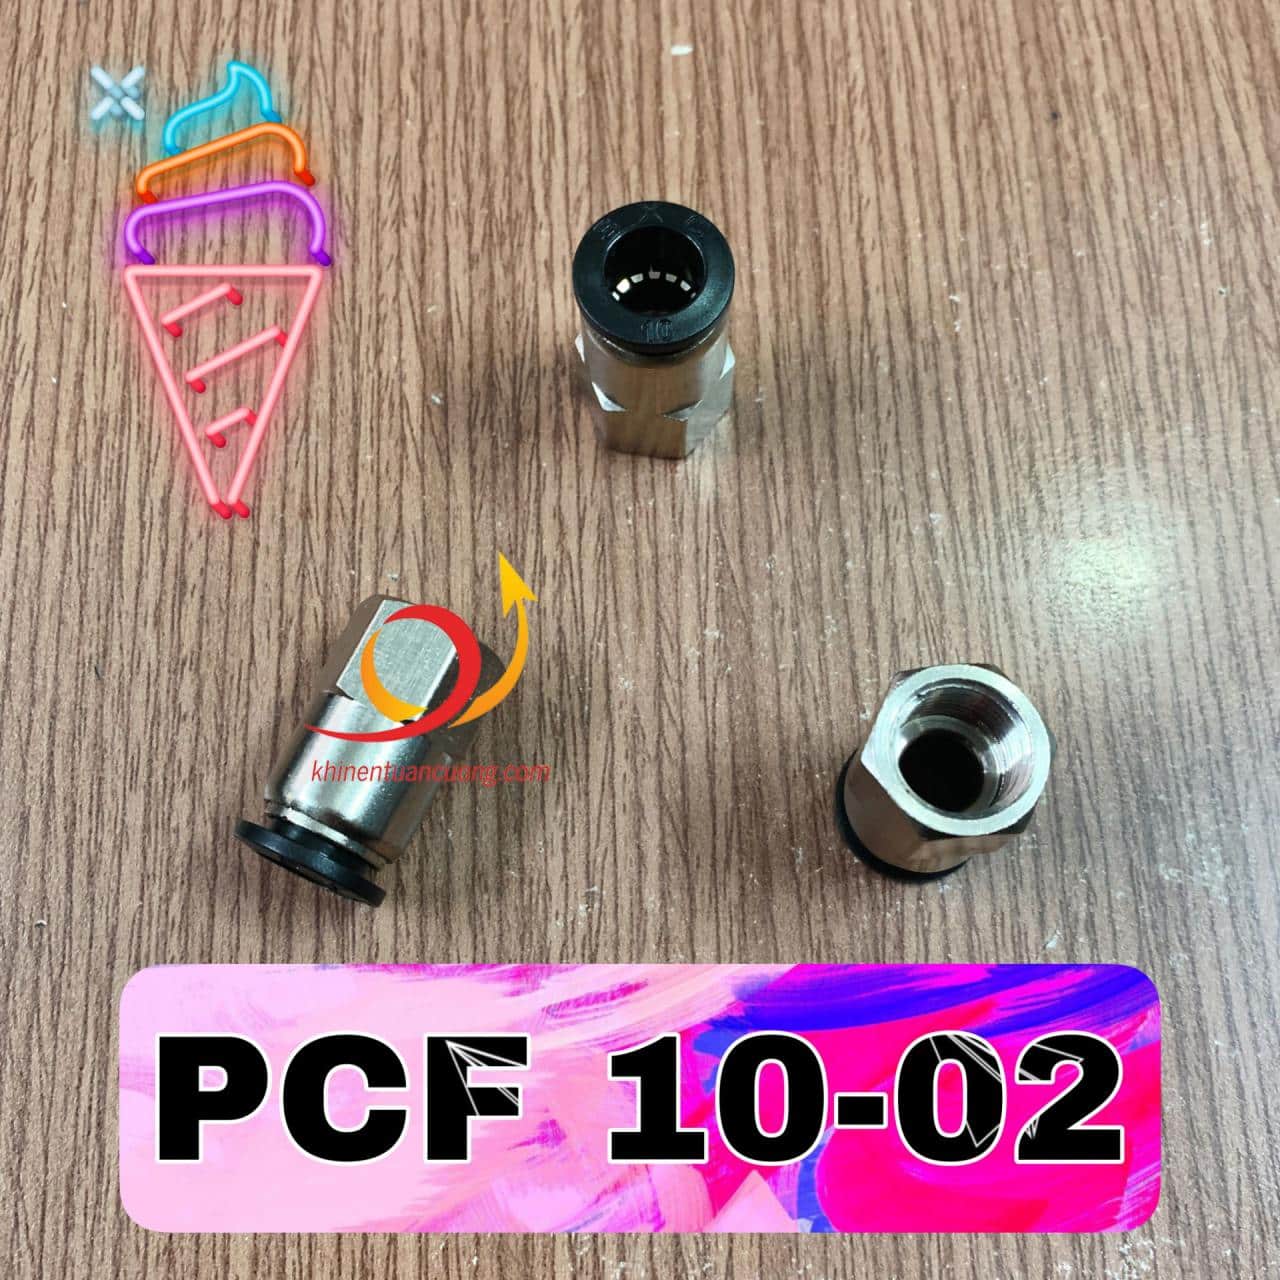 PCF10-02 là chiếc cút nối nhanh ren trong PT1/4 inch hệ anh (tương đương 12mm) cắm nhanh ống dây hơi phi 10